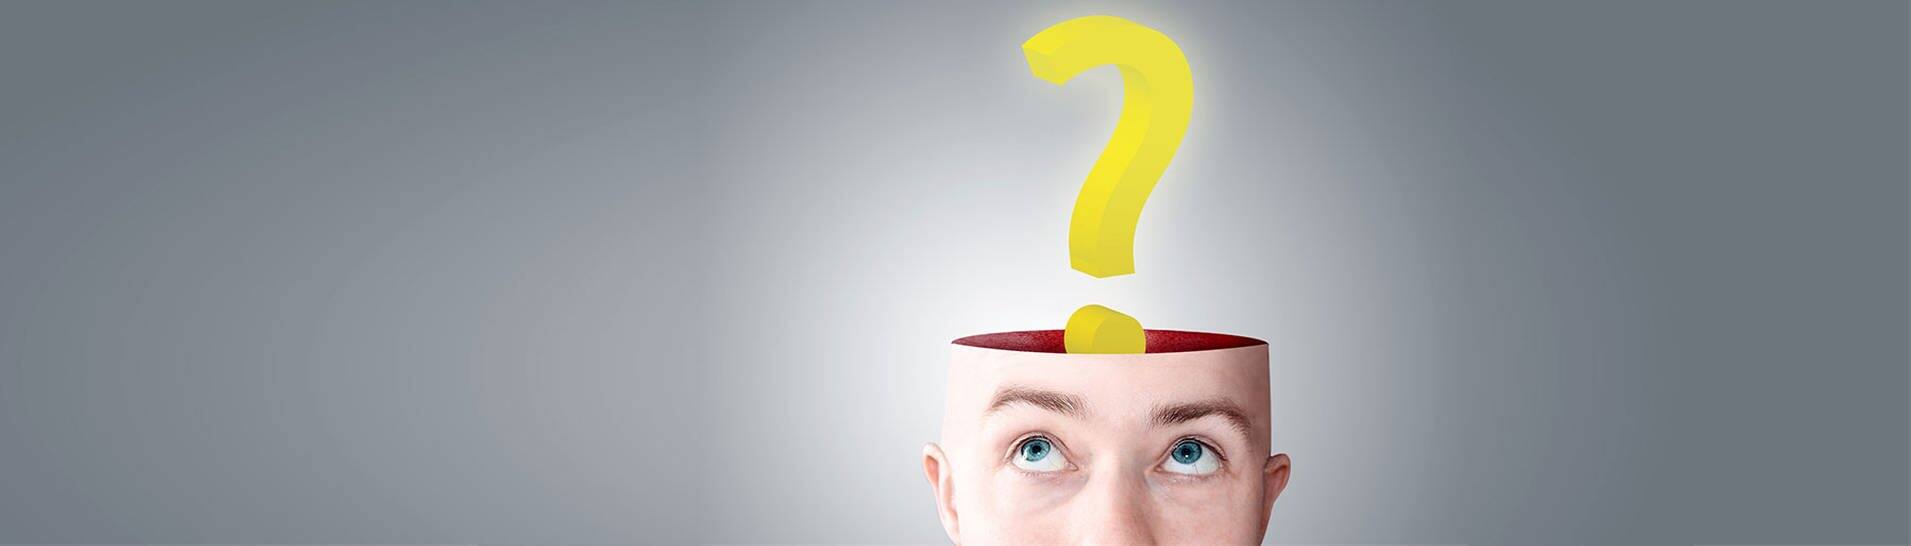 Fragezeichen über dem leeren Kopf eines jungen Mannes (Foto: Adobe Stock, lassedesignen)